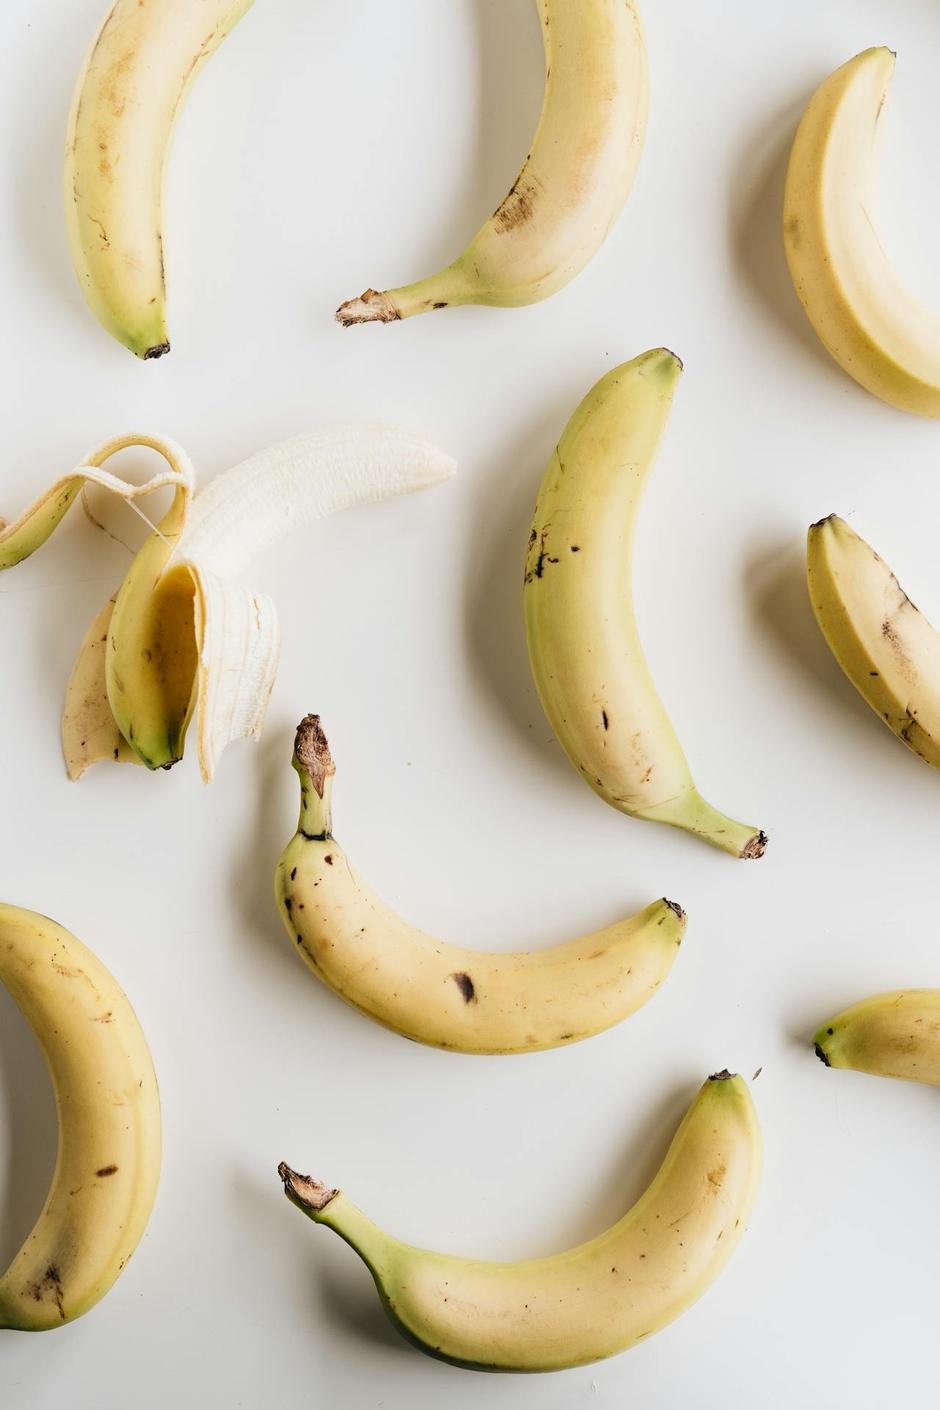 banana | Author: Alleksana/Pexels